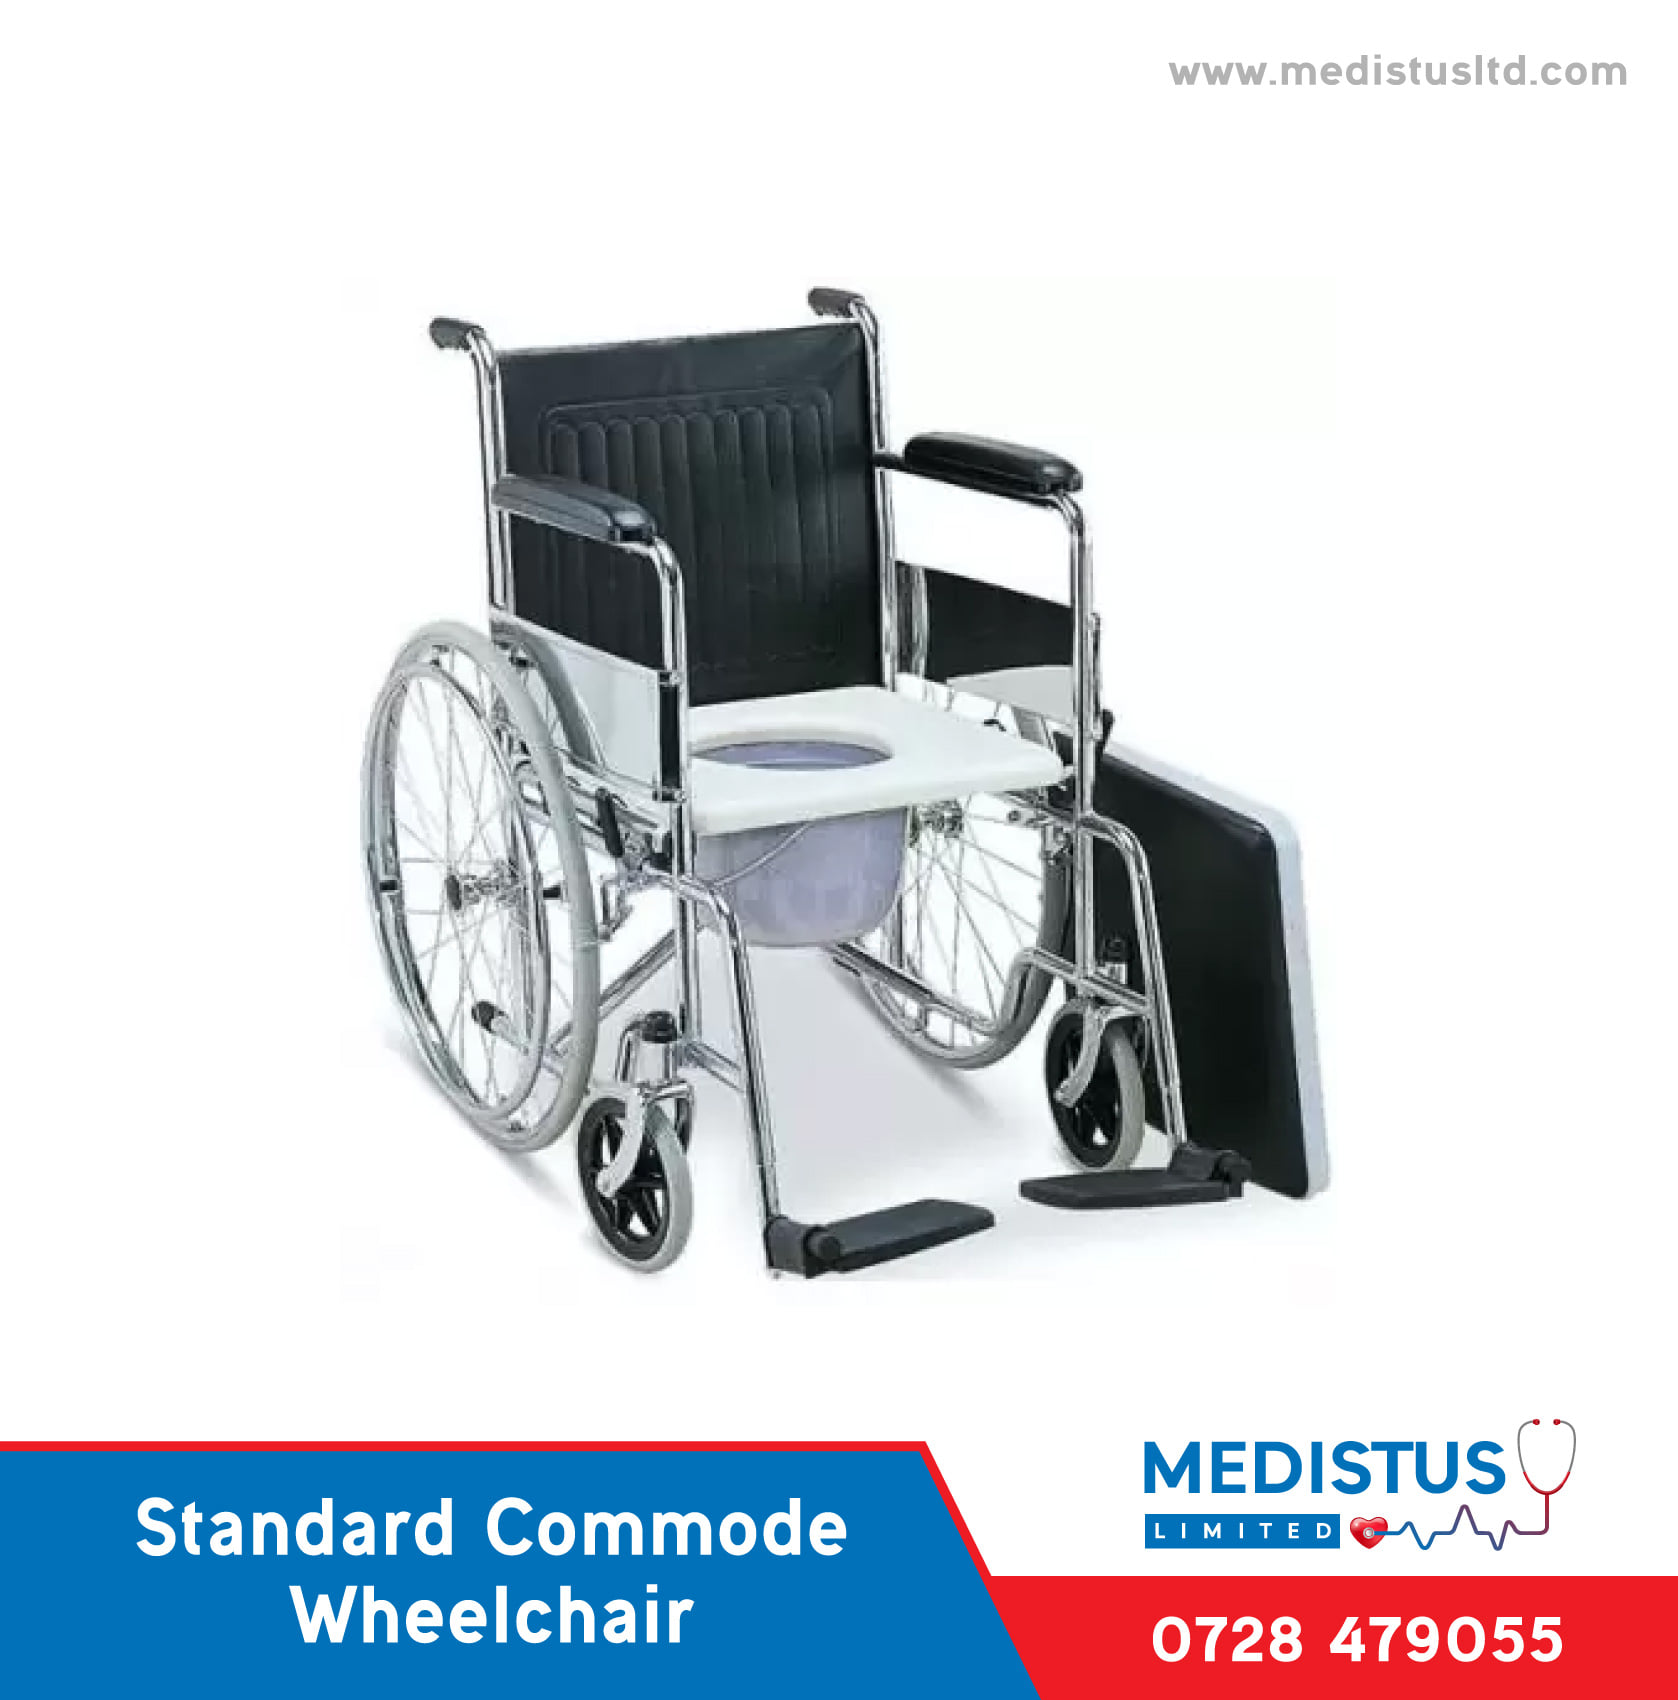 Standard Commode Wheelchair price in Nairobi